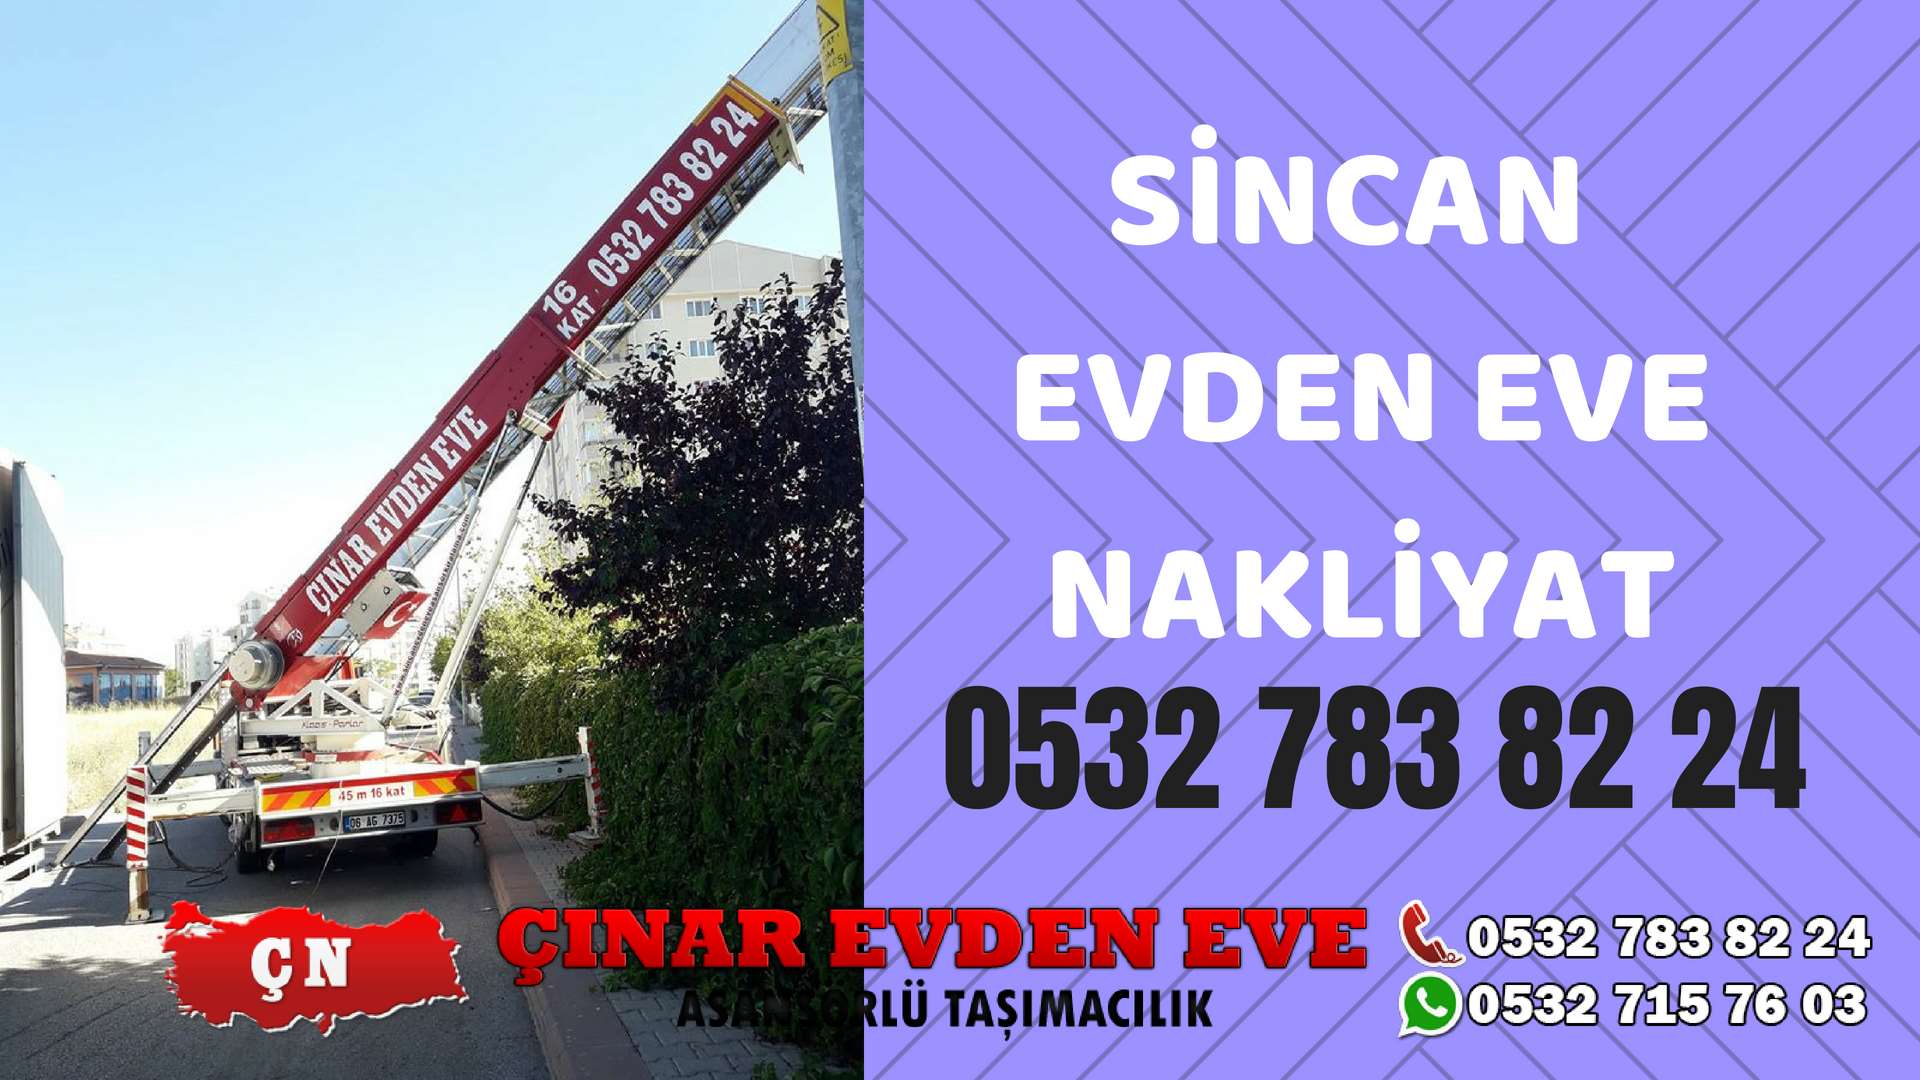   Sincan Evden Eve Nakliyat, Asansörlü Taşıma Çınar Nakliyat Sincan 0532 715 76 03